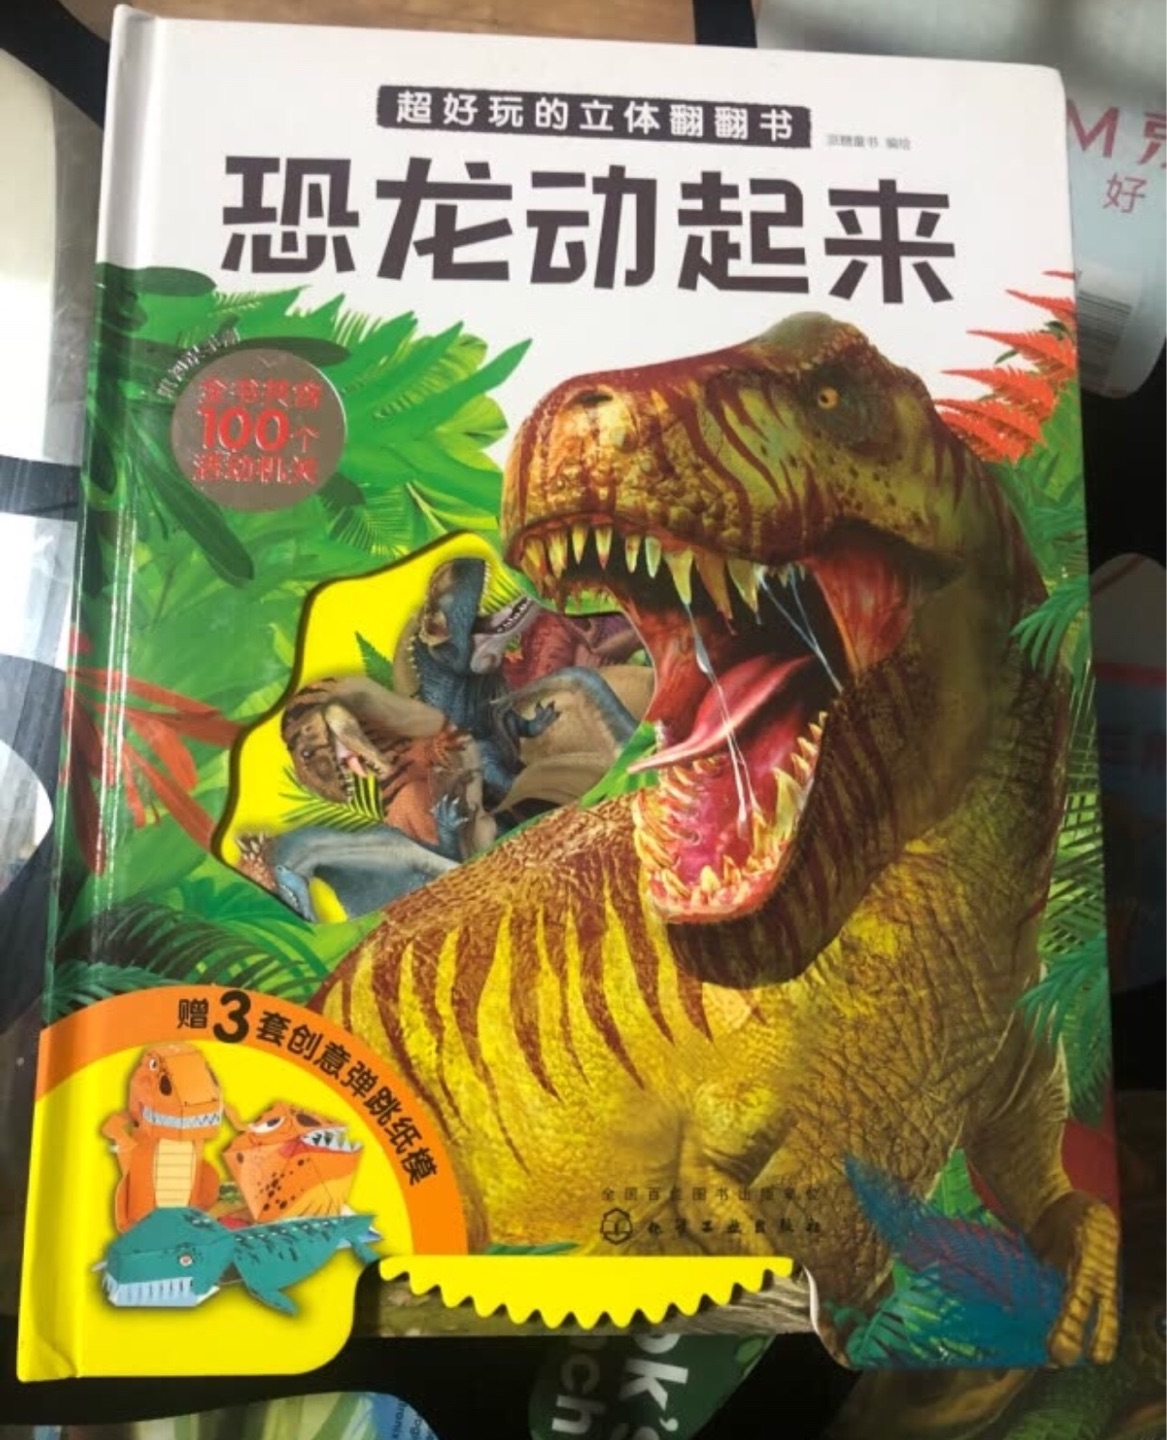 恐龙是小朋友们都喜欢的主题，暴受欢迎的一本书